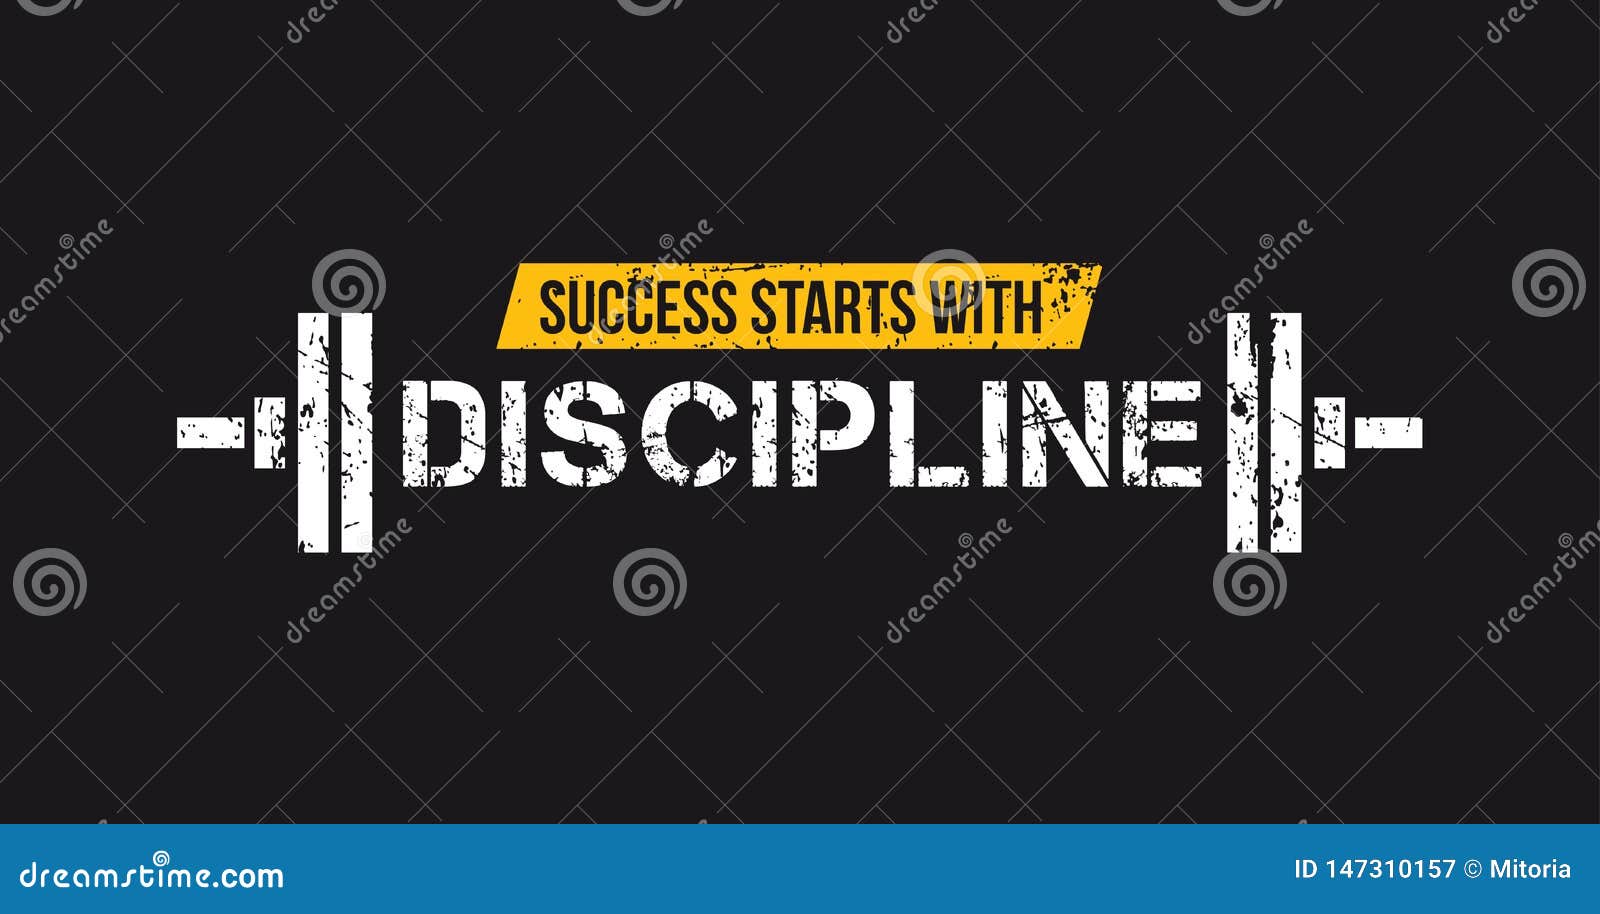 discipline over motivation quote' Sticker | Spreadshirt